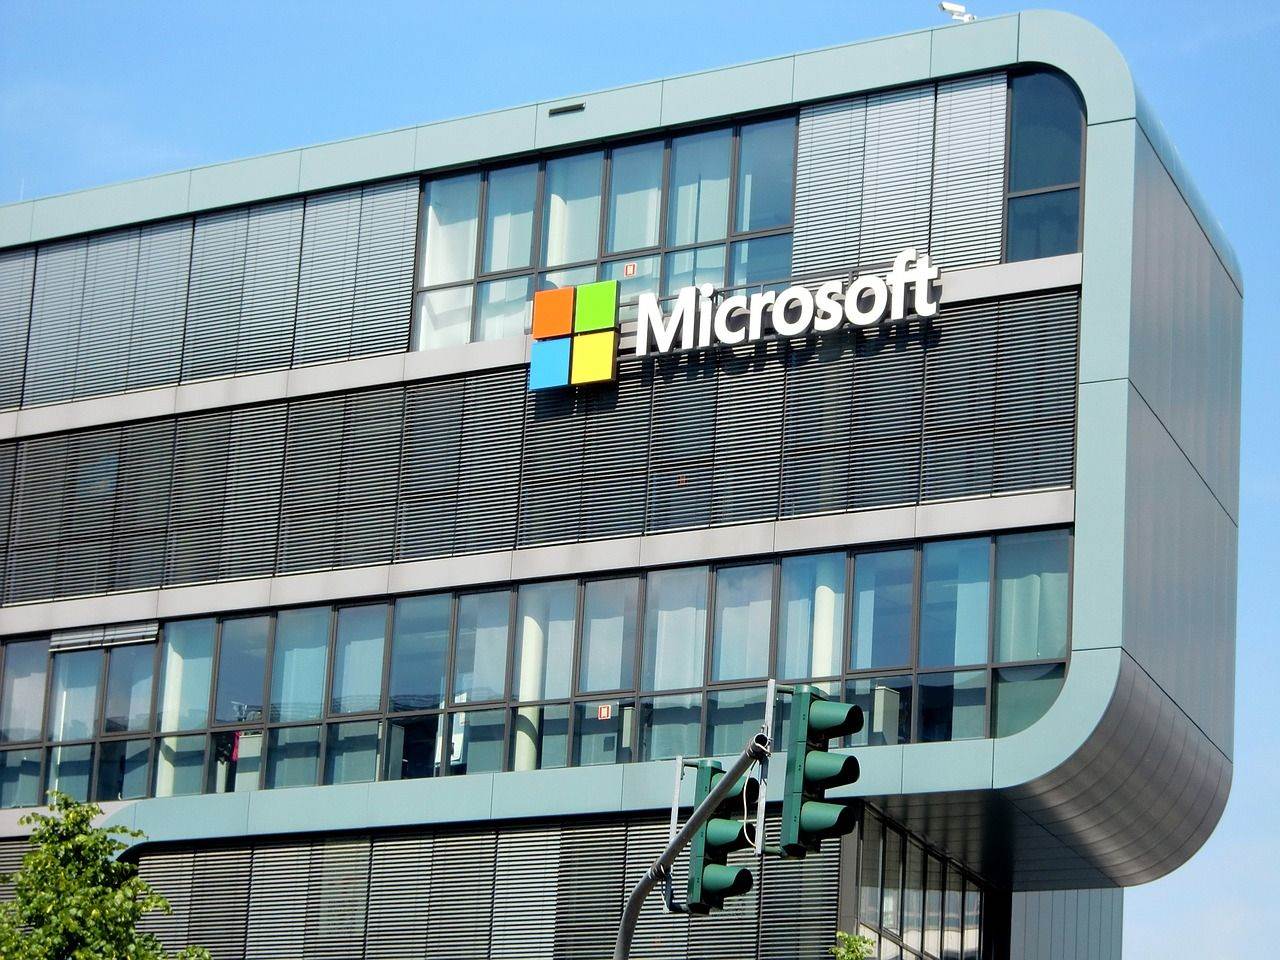  Microsoft sjediste zgrada (2).jpg 